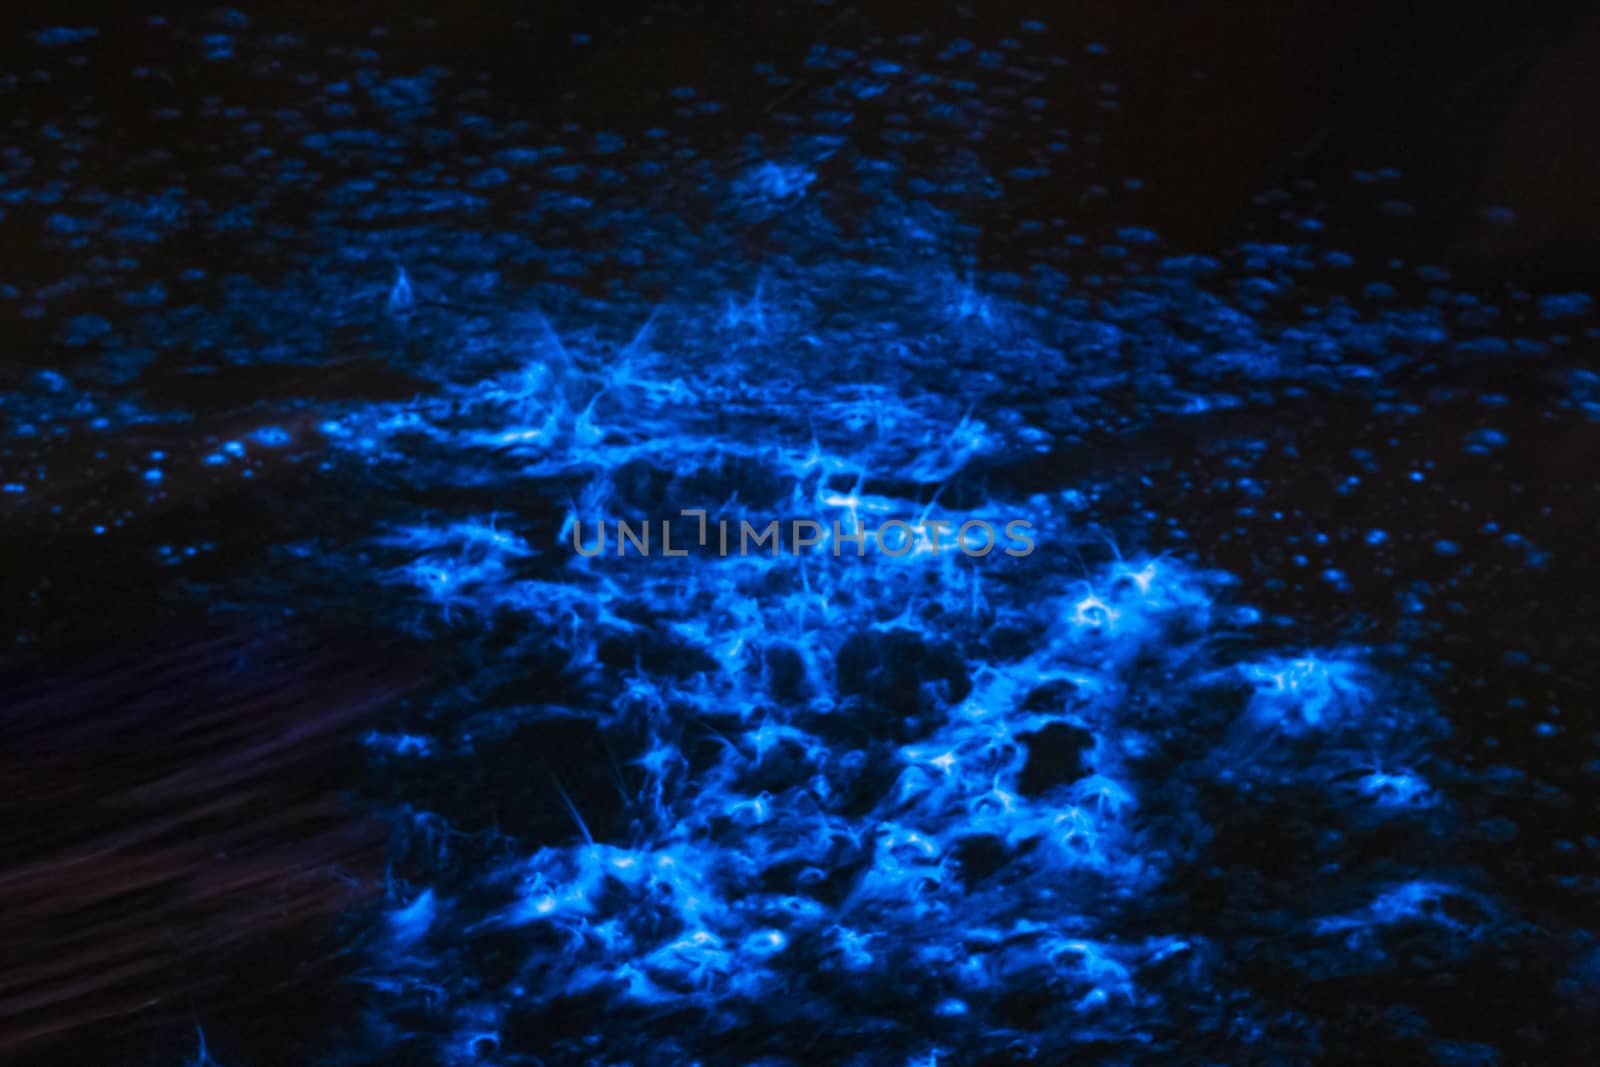 Bioluminescence sea sparkle in ocean tide by lovleah